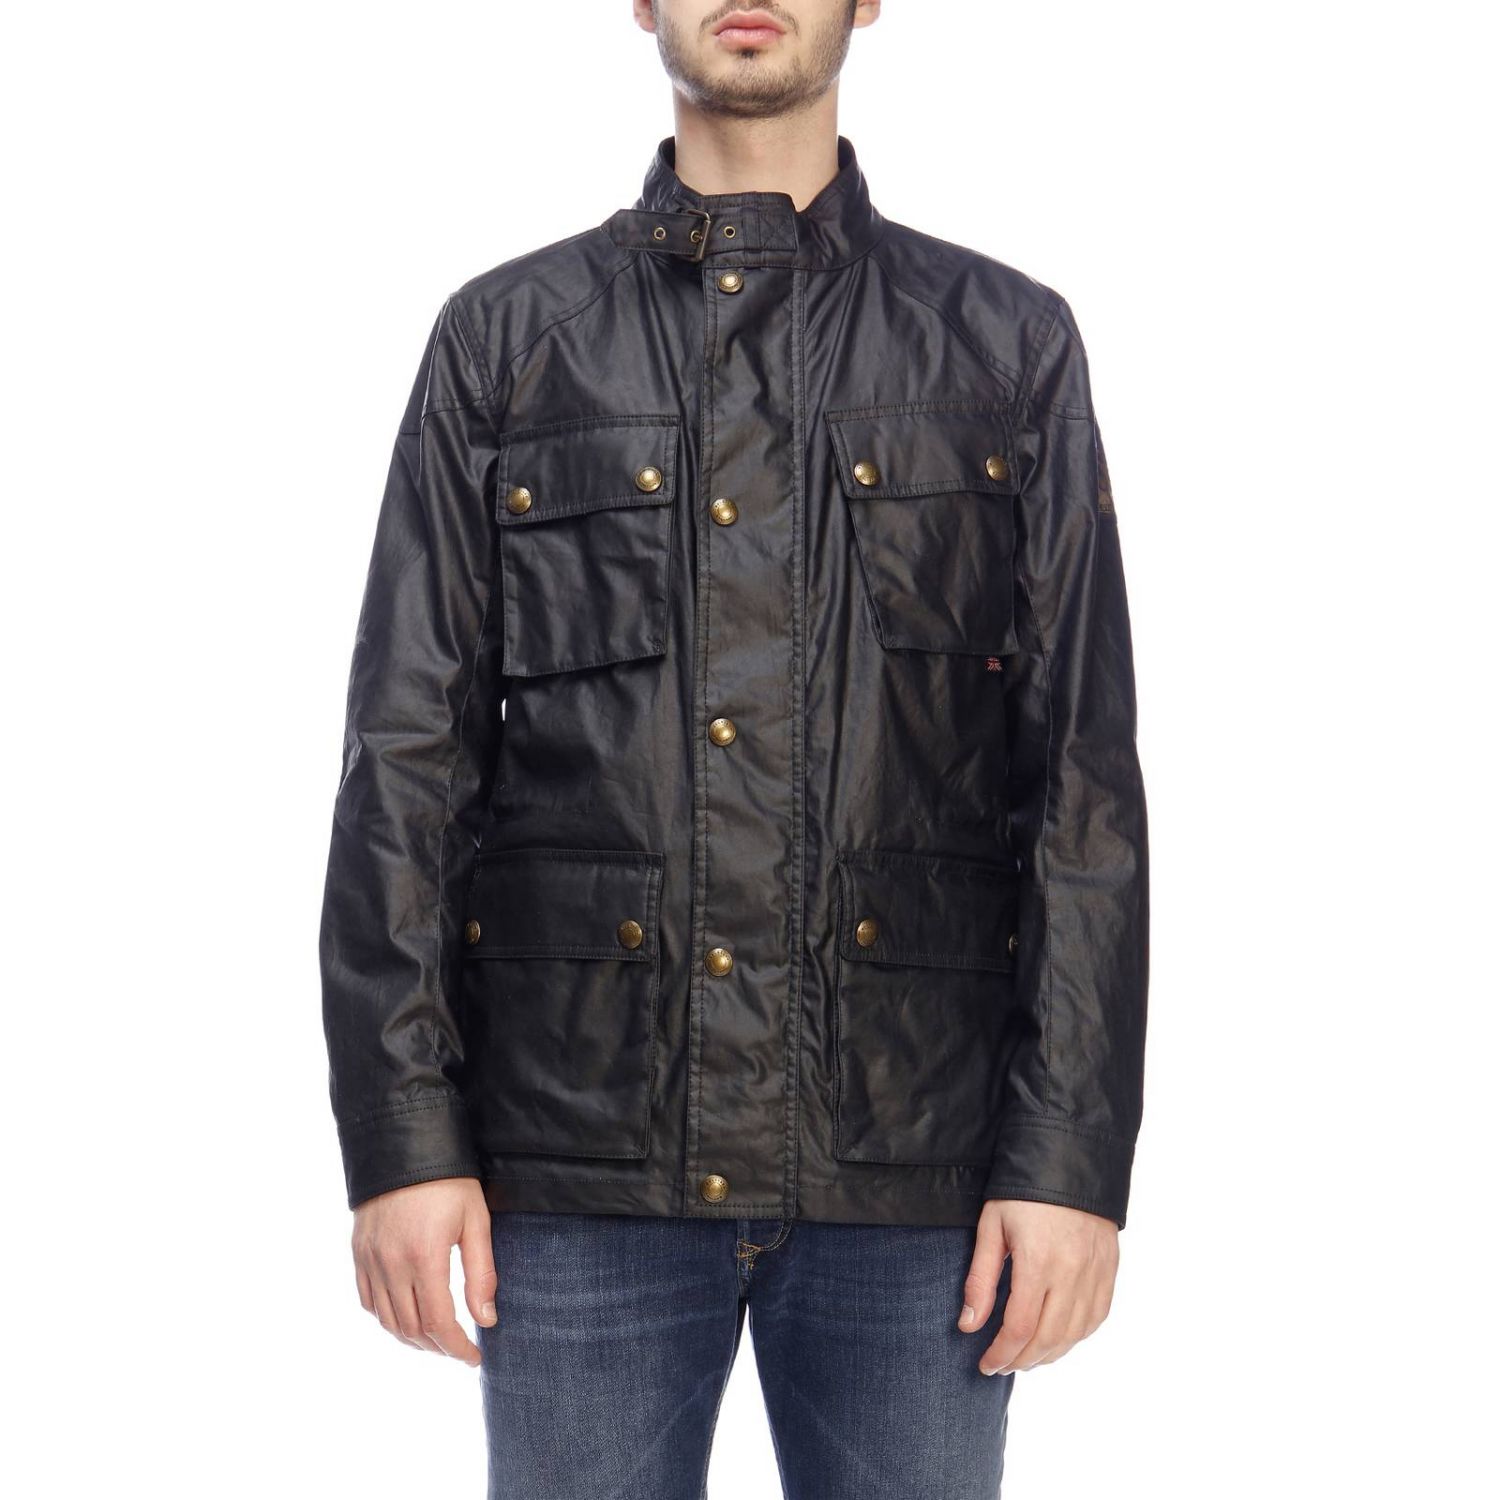 Belstaff Outlet: jacket for men - Navy | Belstaff jacket 71050447 ...